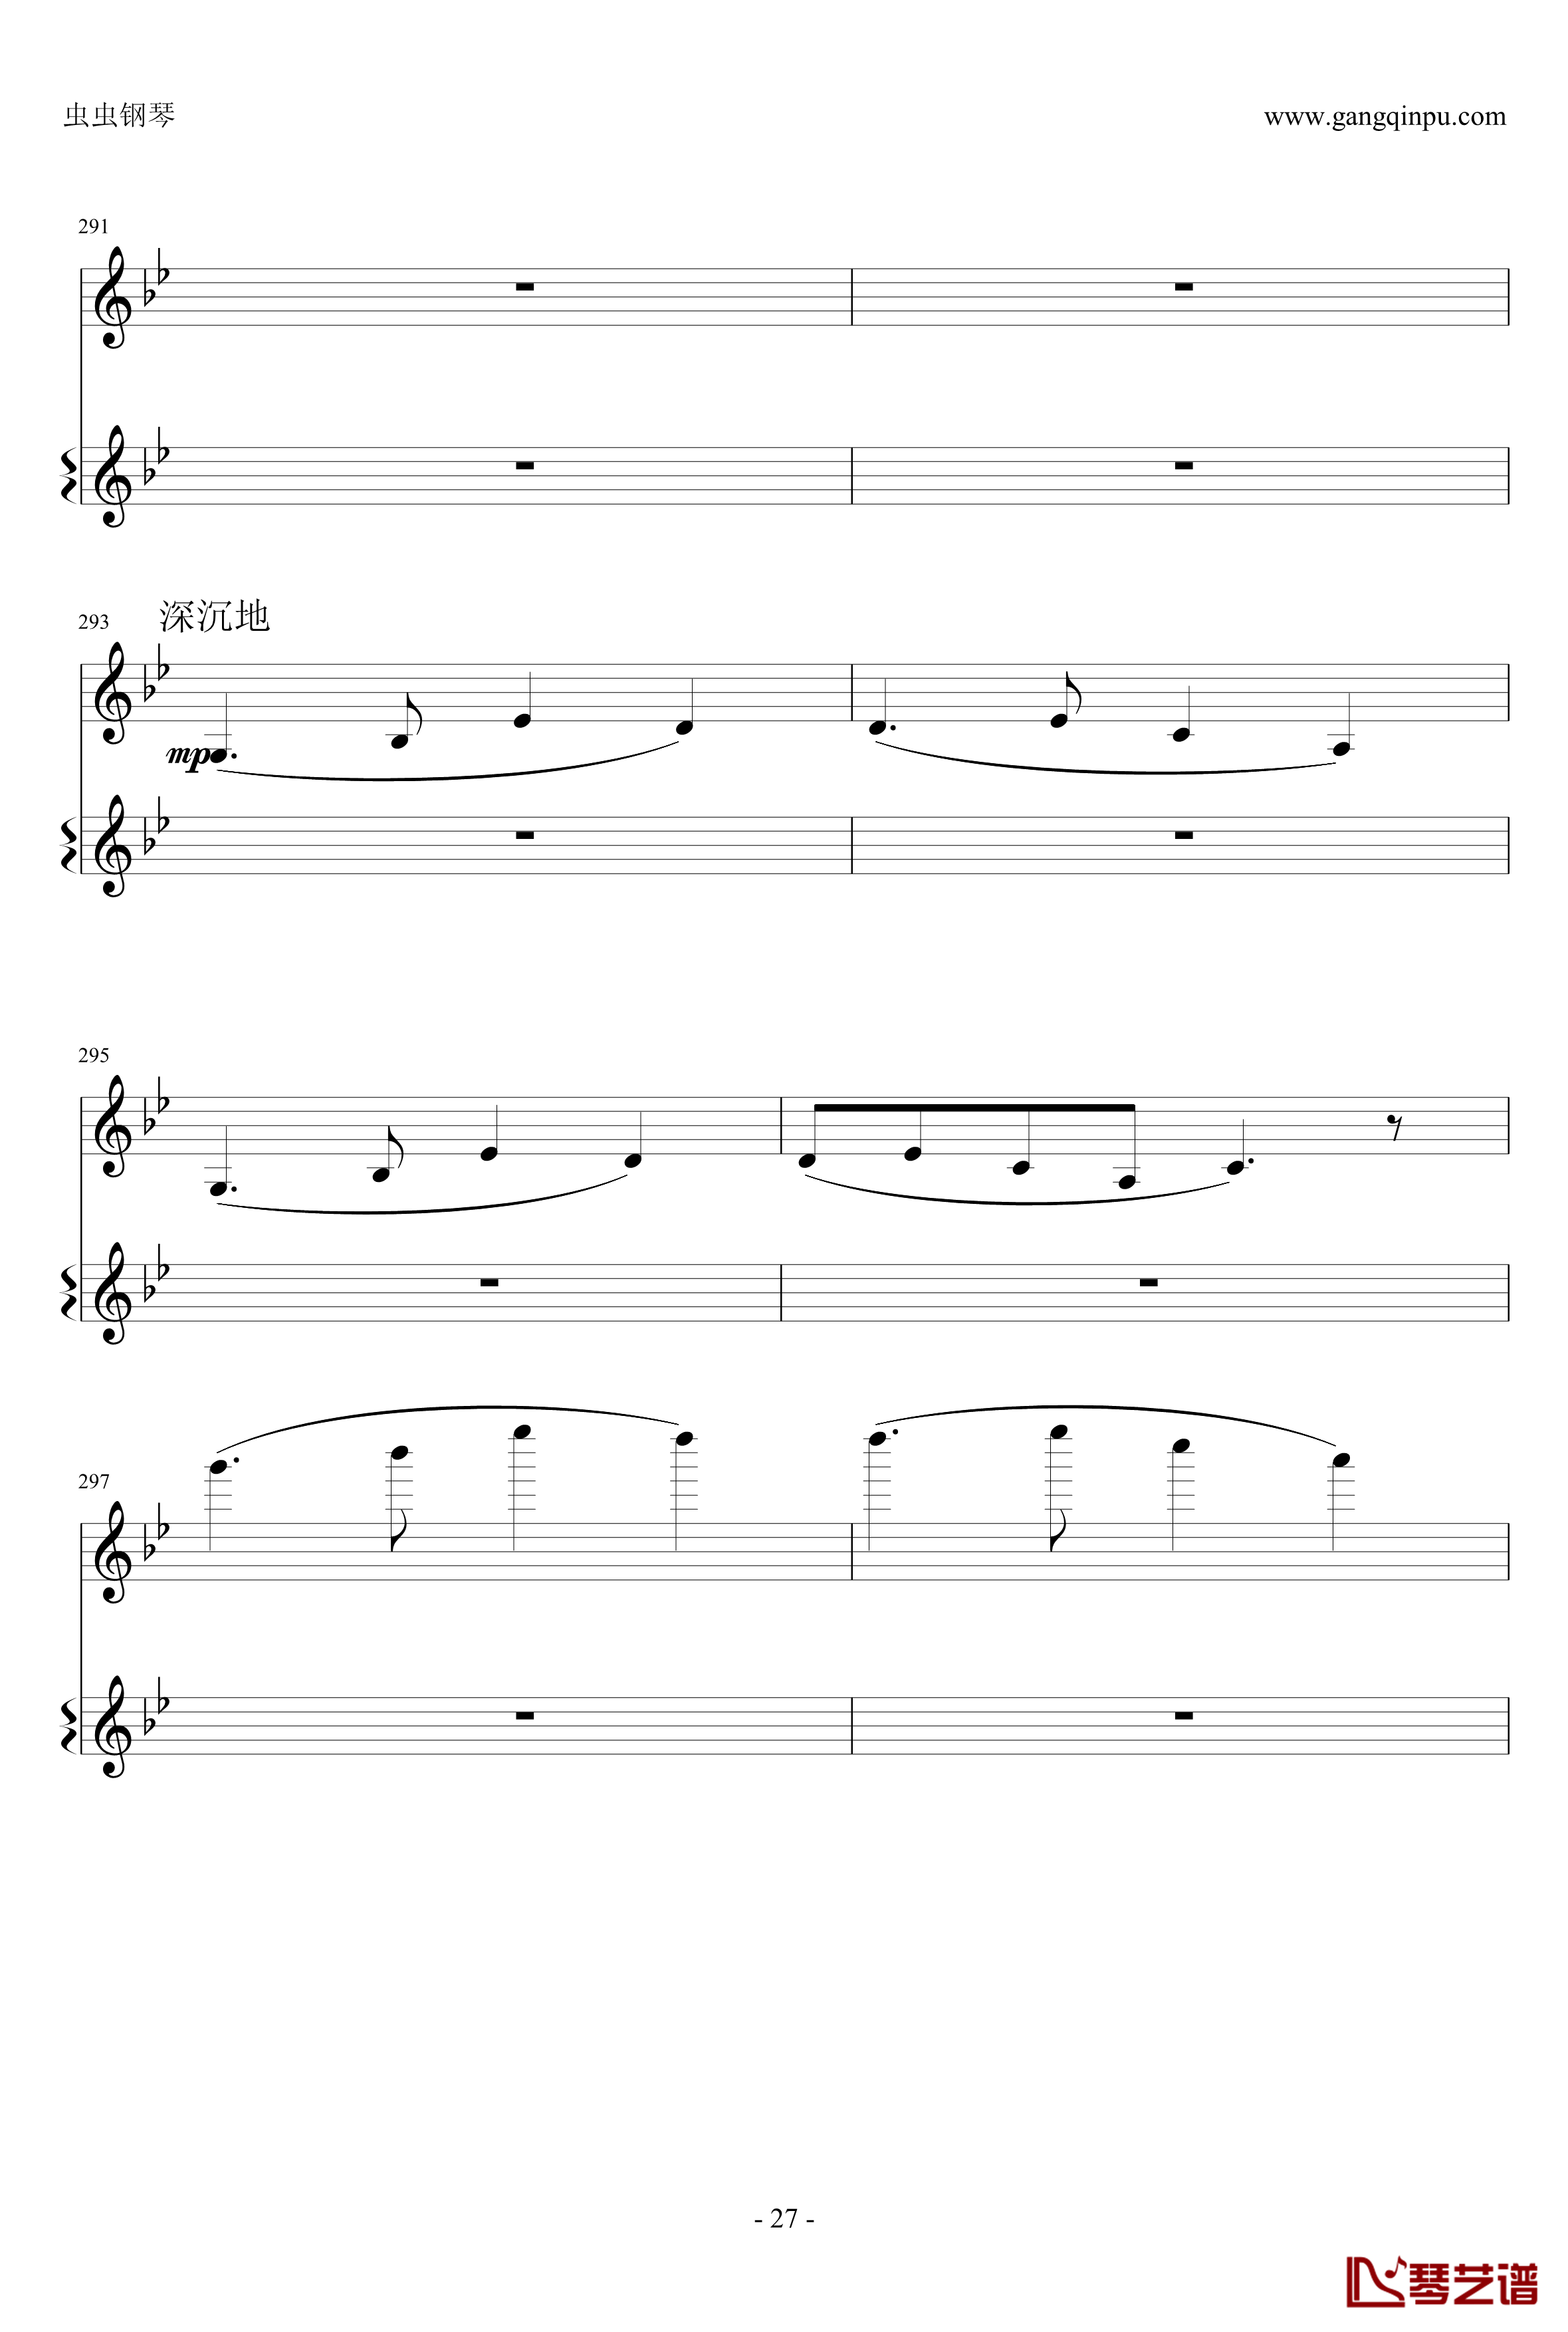 意大利国歌钢琴谱-变奏曲修改版-DXF27